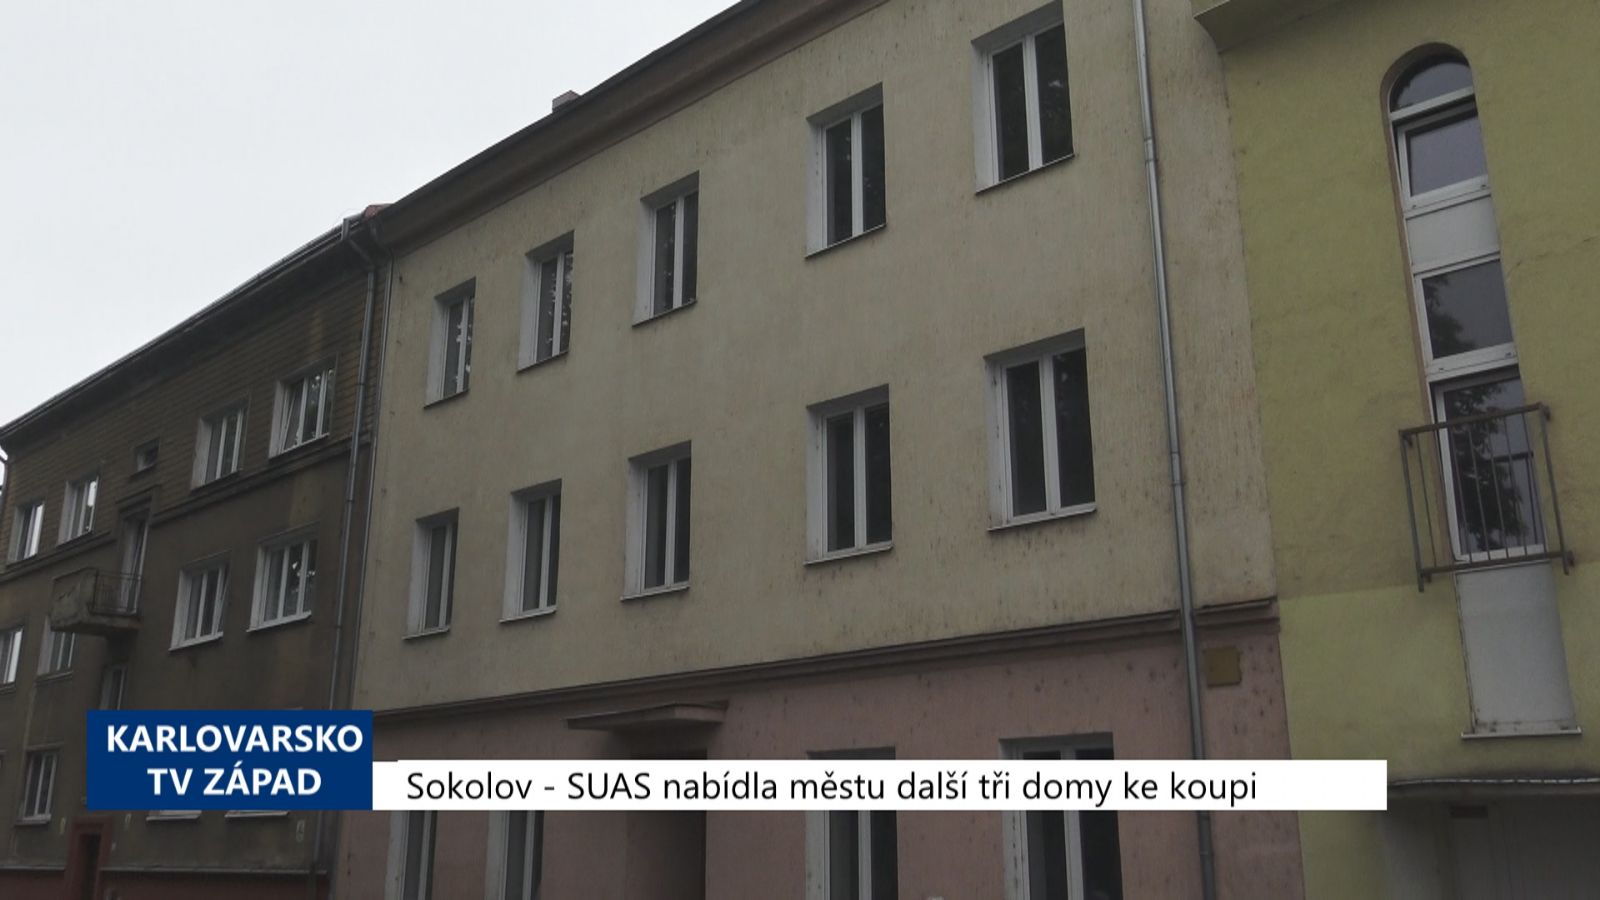 Sokolov: SUAS nabídla městu další tři domy ke koupi (TV Západ)